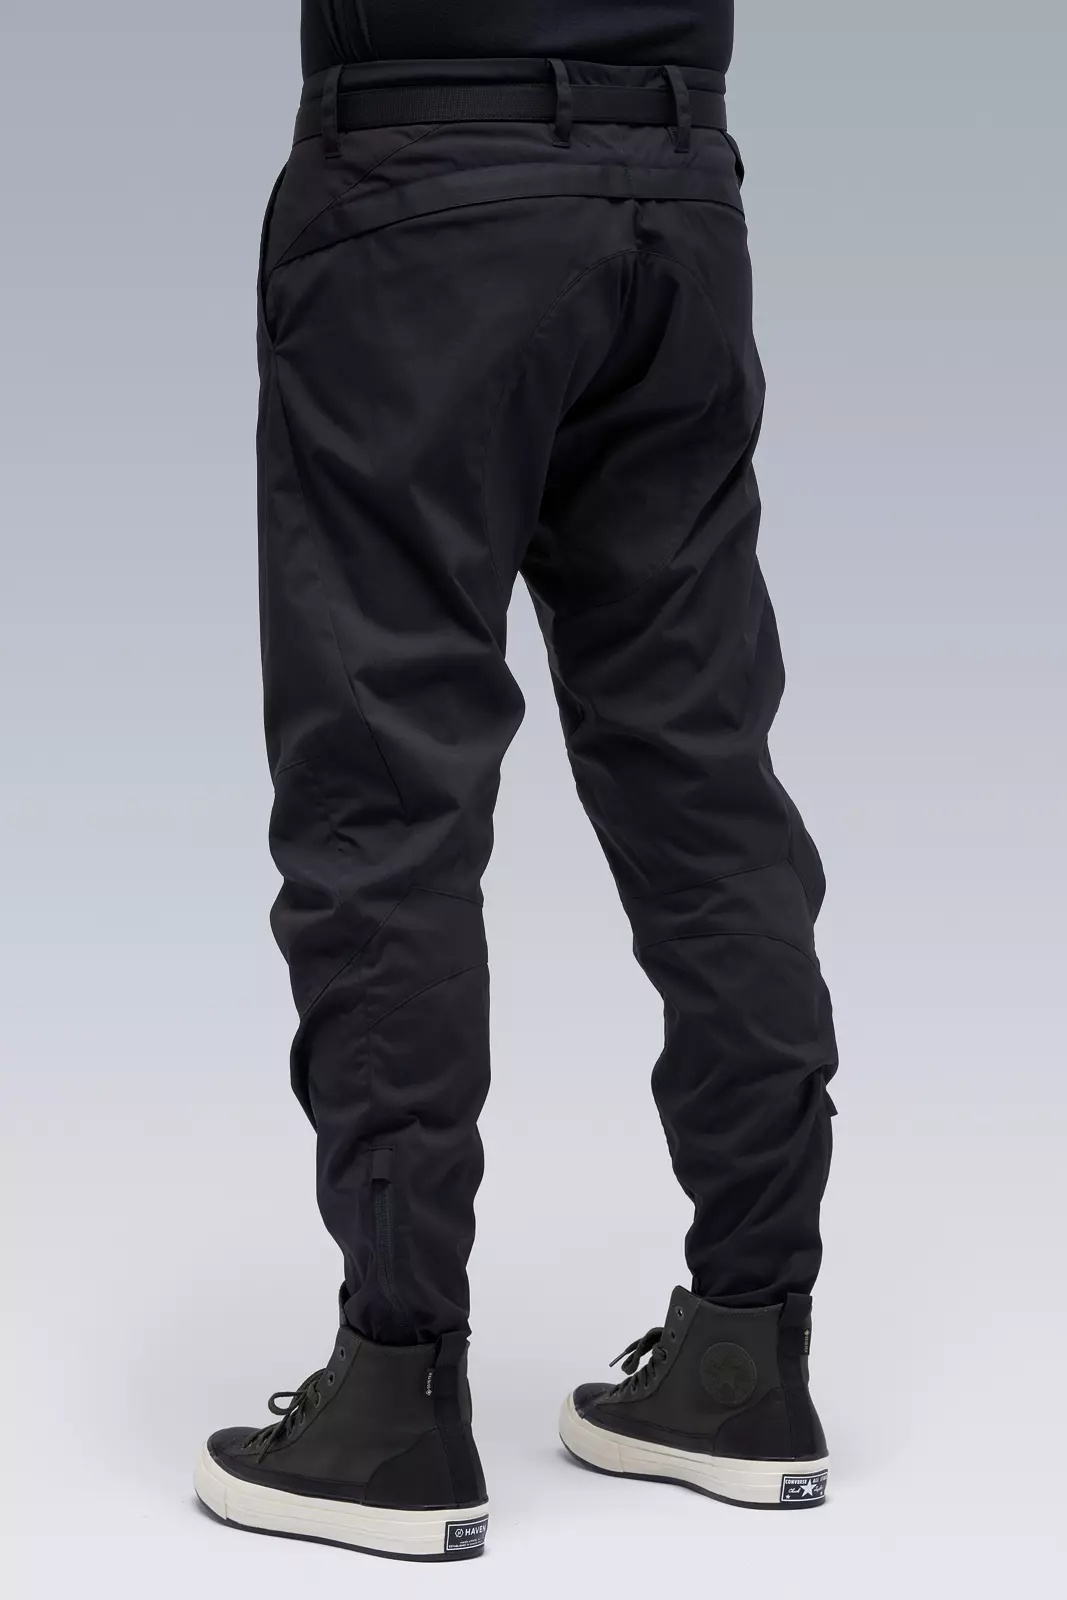 P10-E Encapsulated Nylon  Articulated Pant Black - 8